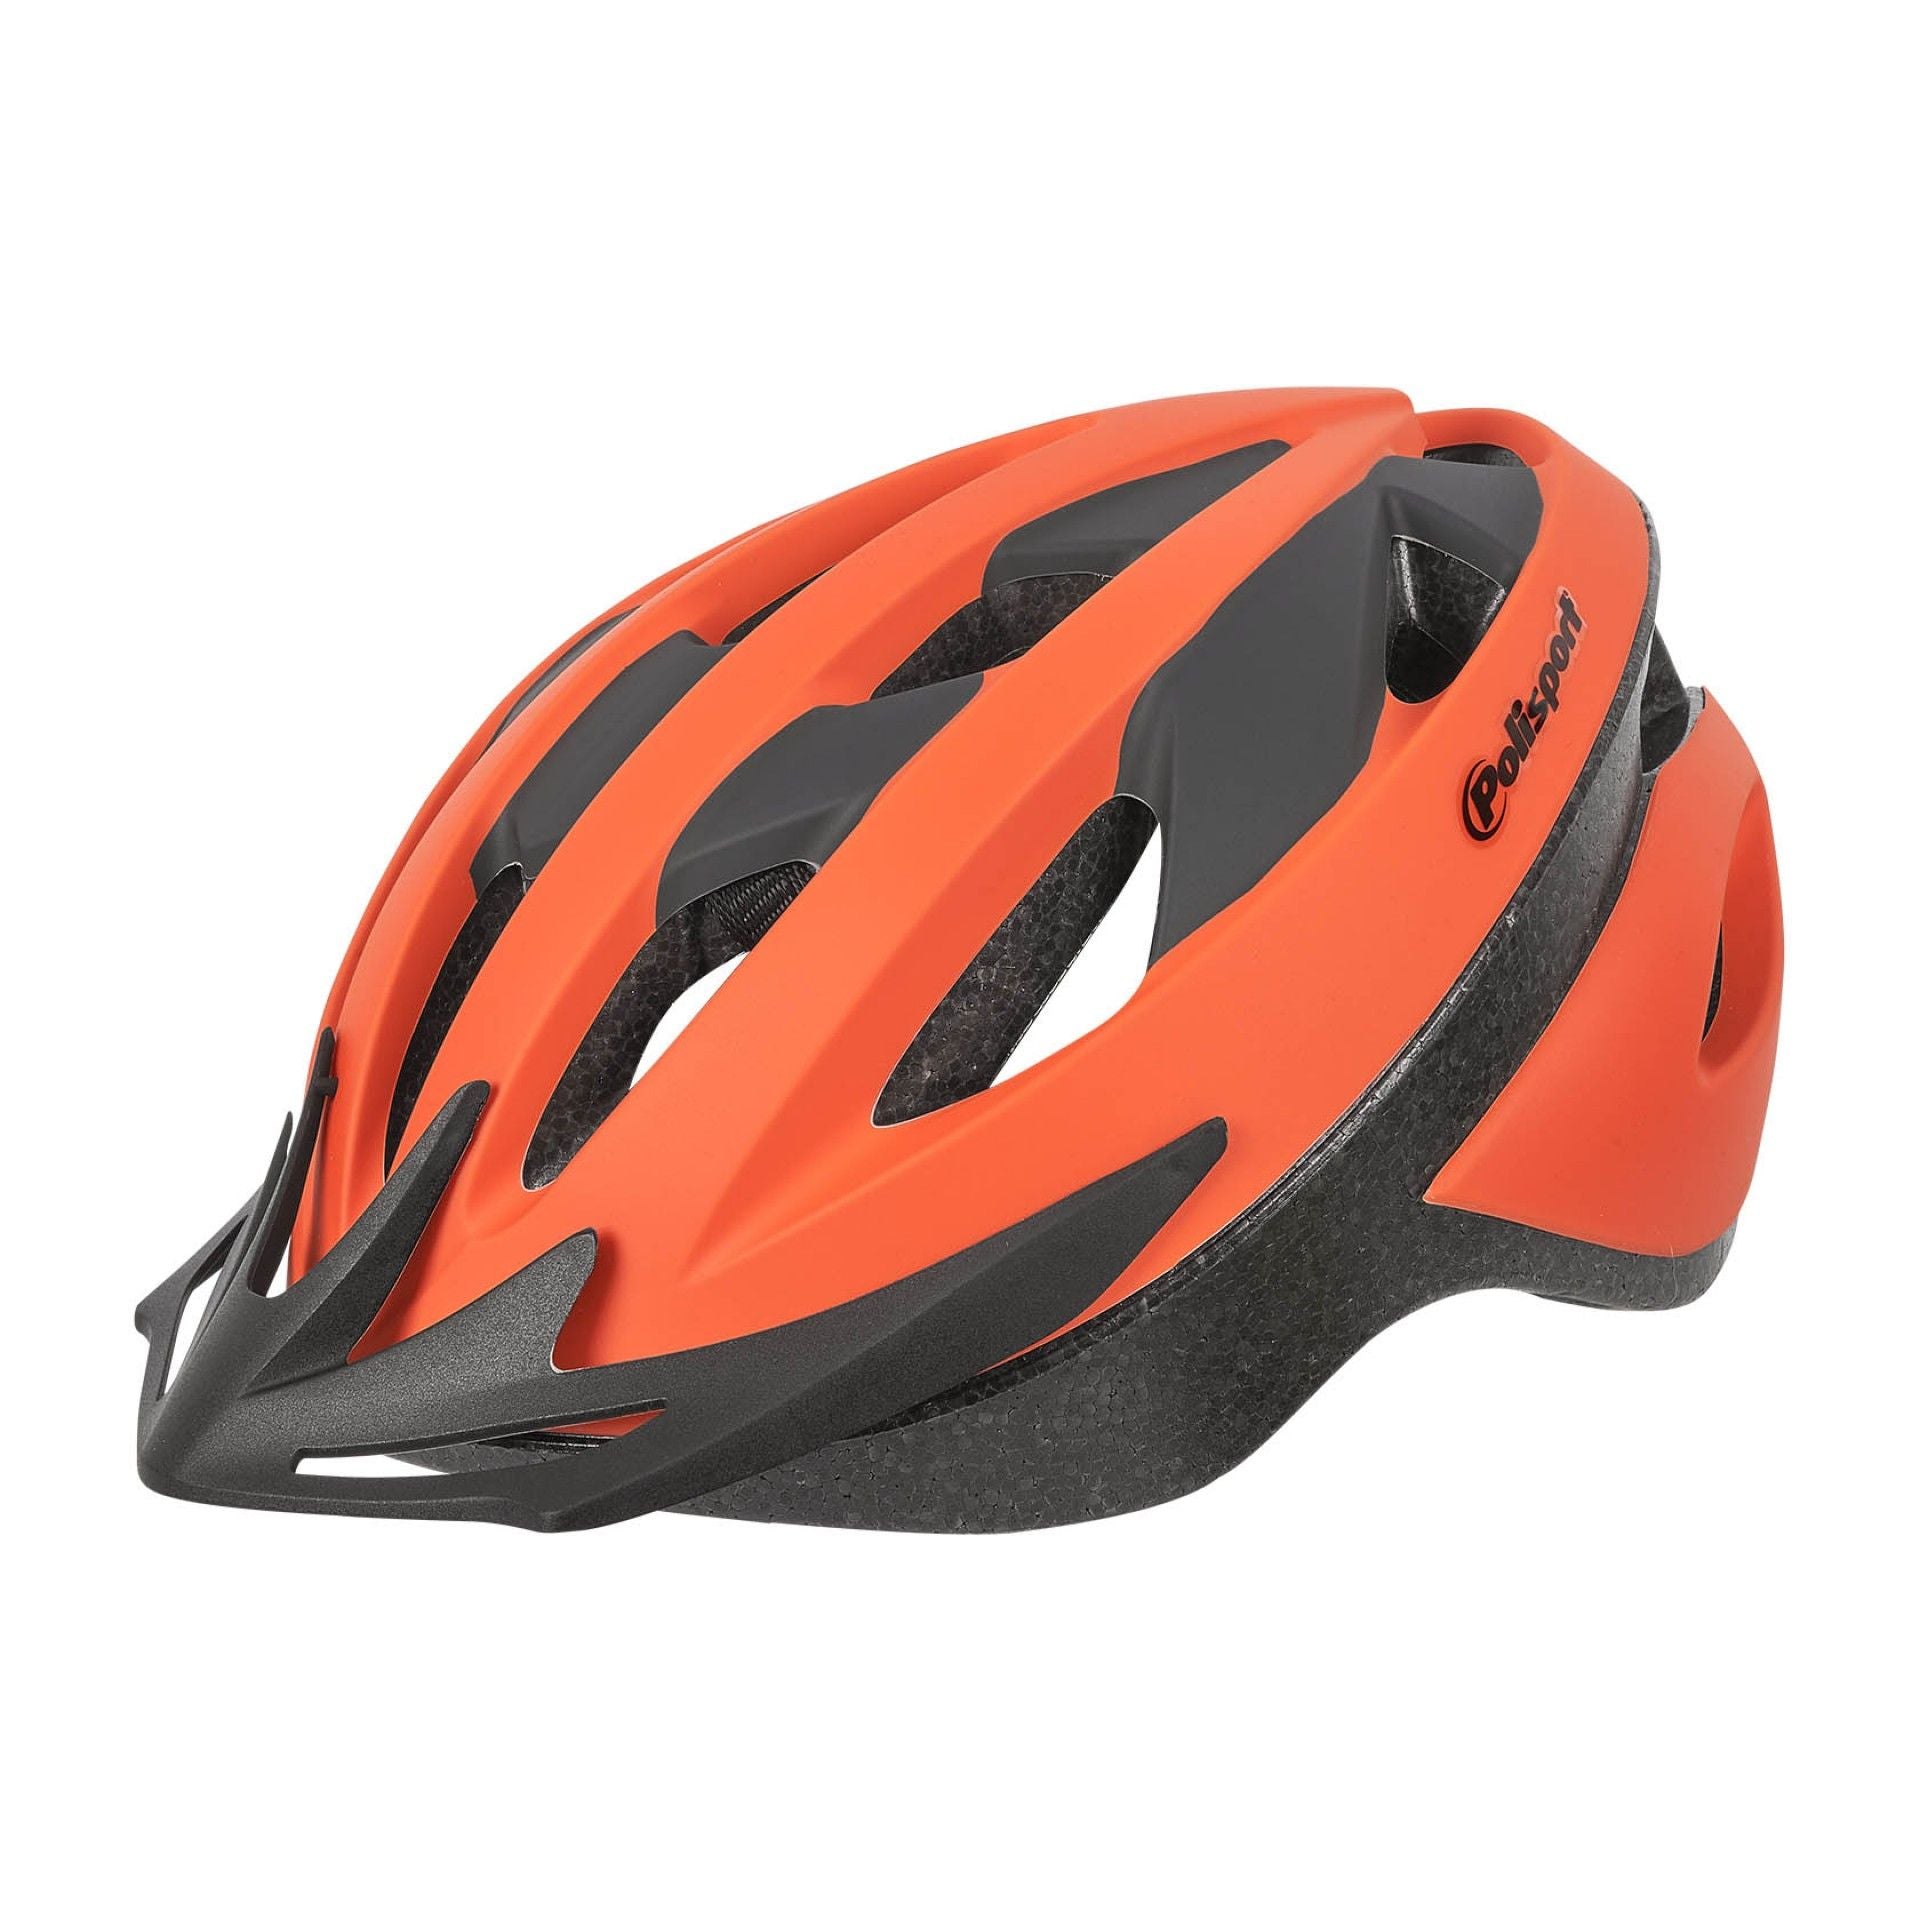 Polisport - Sport Ride Helmet